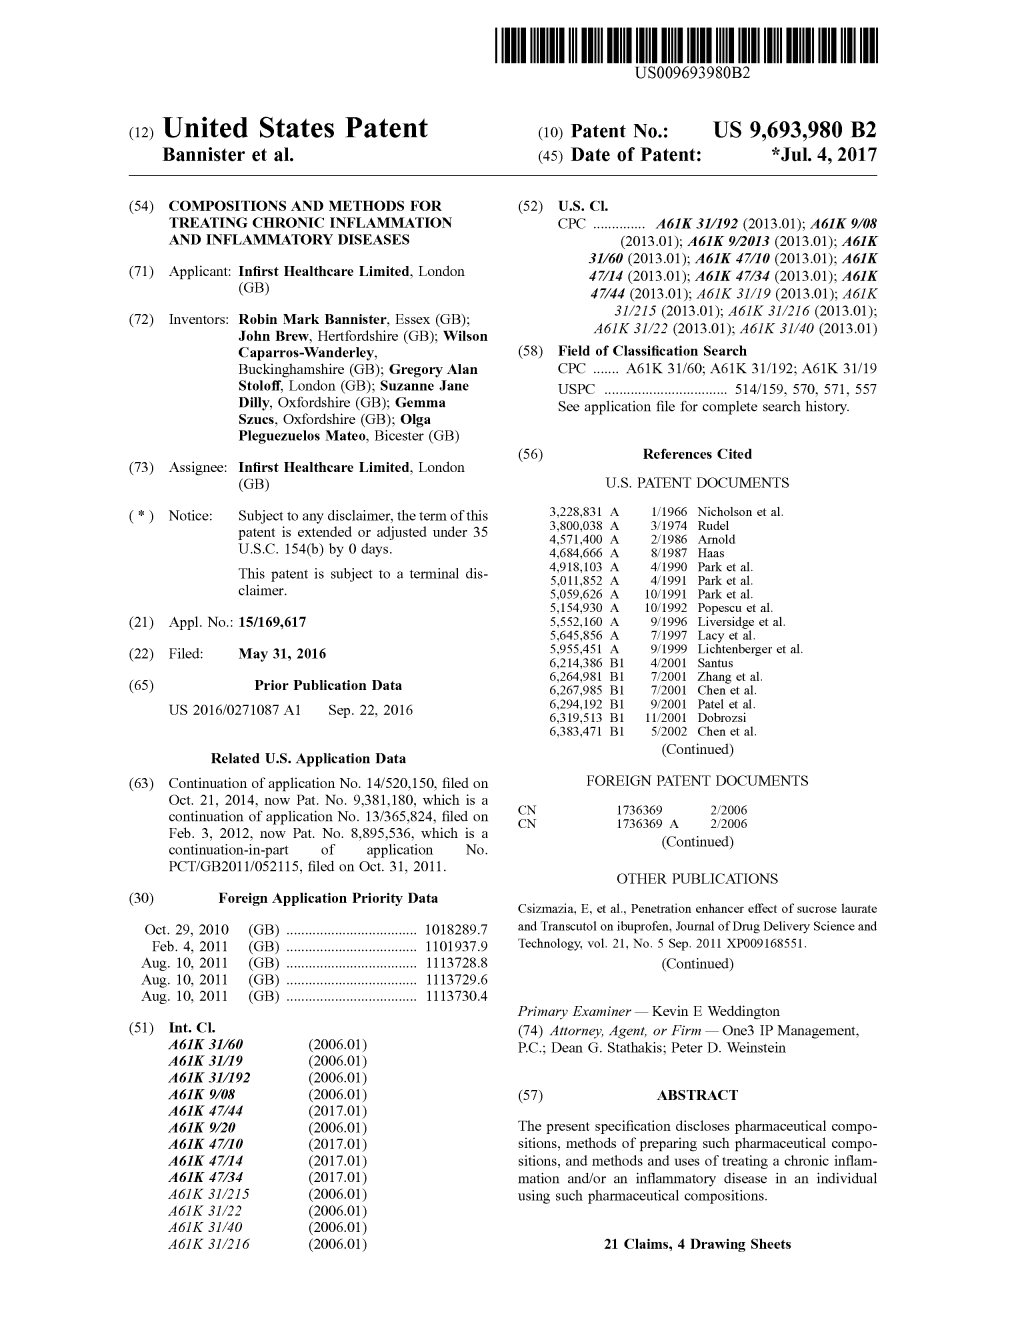 (12) United States Patent (10) Patent No.: US 9,693,980 B2 Bannister Et Al